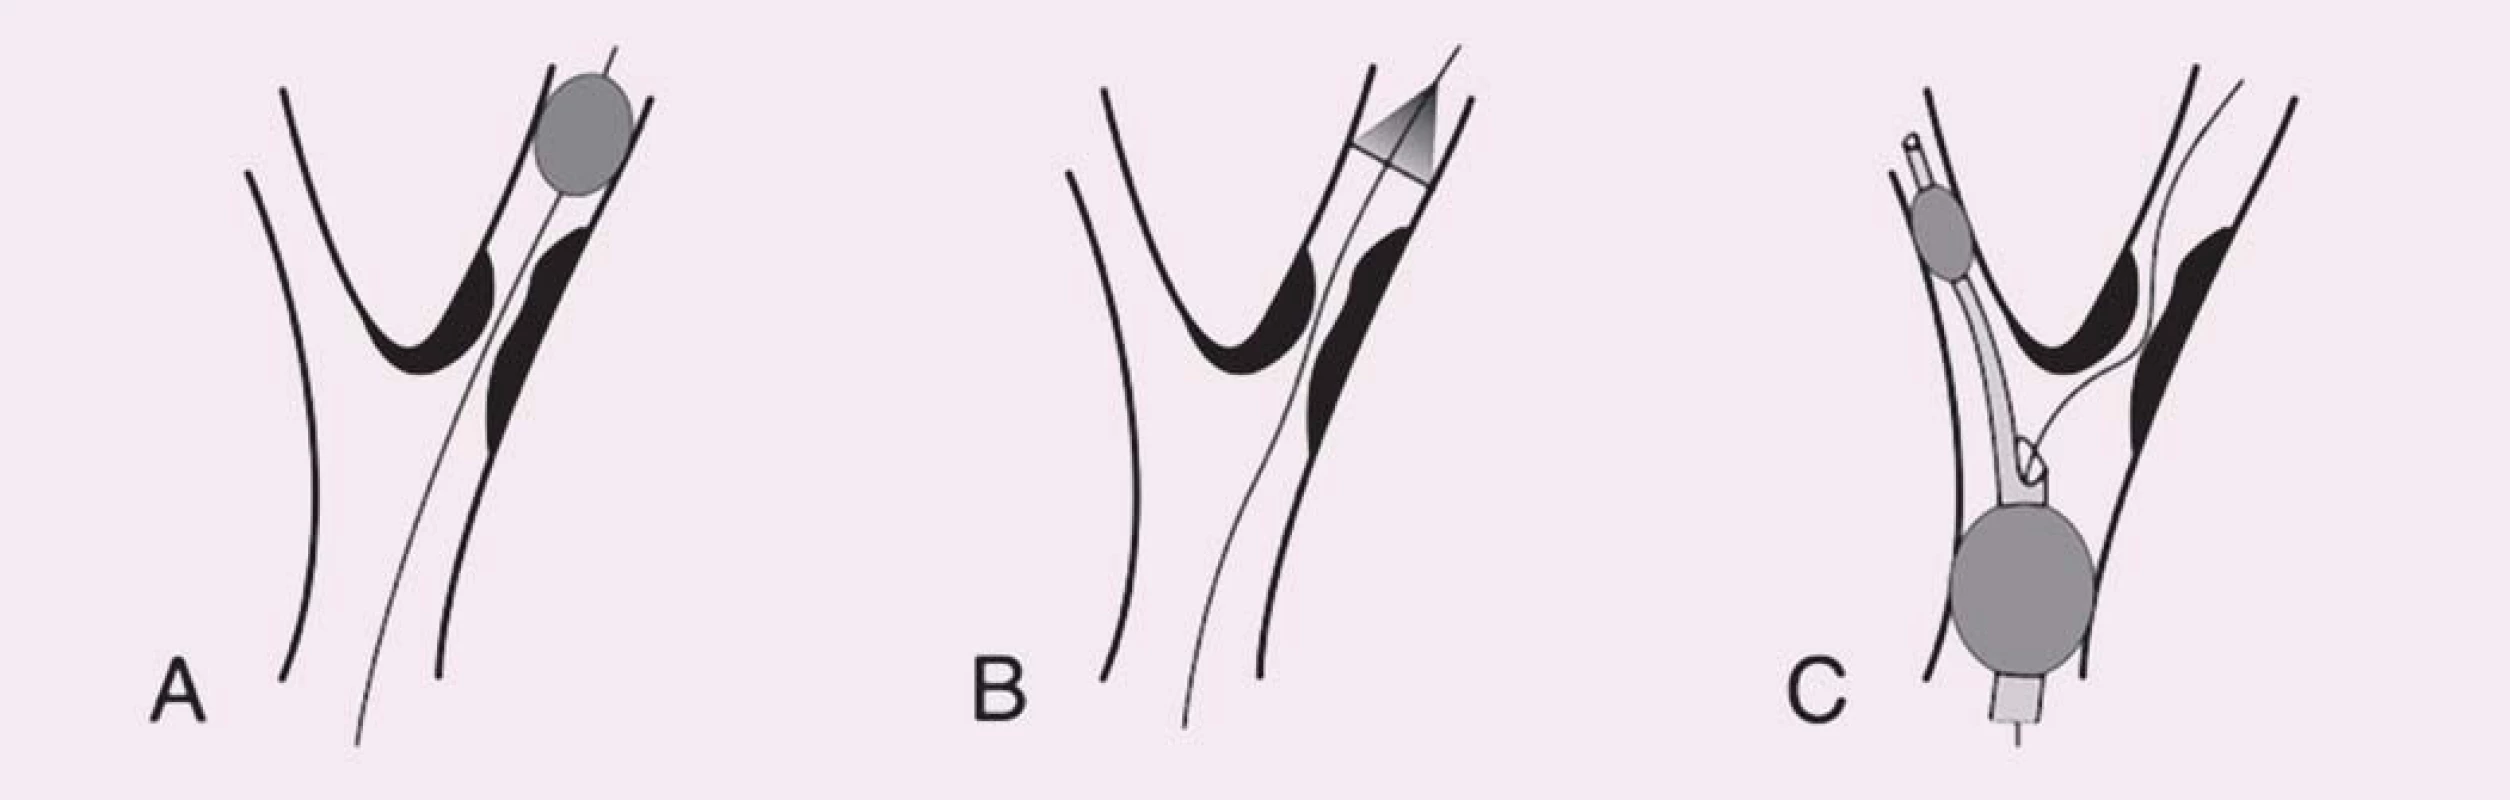 Schematické znázornění typů protektivních systémů. Vodicí drát prochází stenózou vnitřní karotické arterie ve všech panelech. 
A) Distální okluze. B) Distální fi ltr. C) Proximální okluze (distální balon v arteria carotis externa a proximální balon v arteria carotis communis).